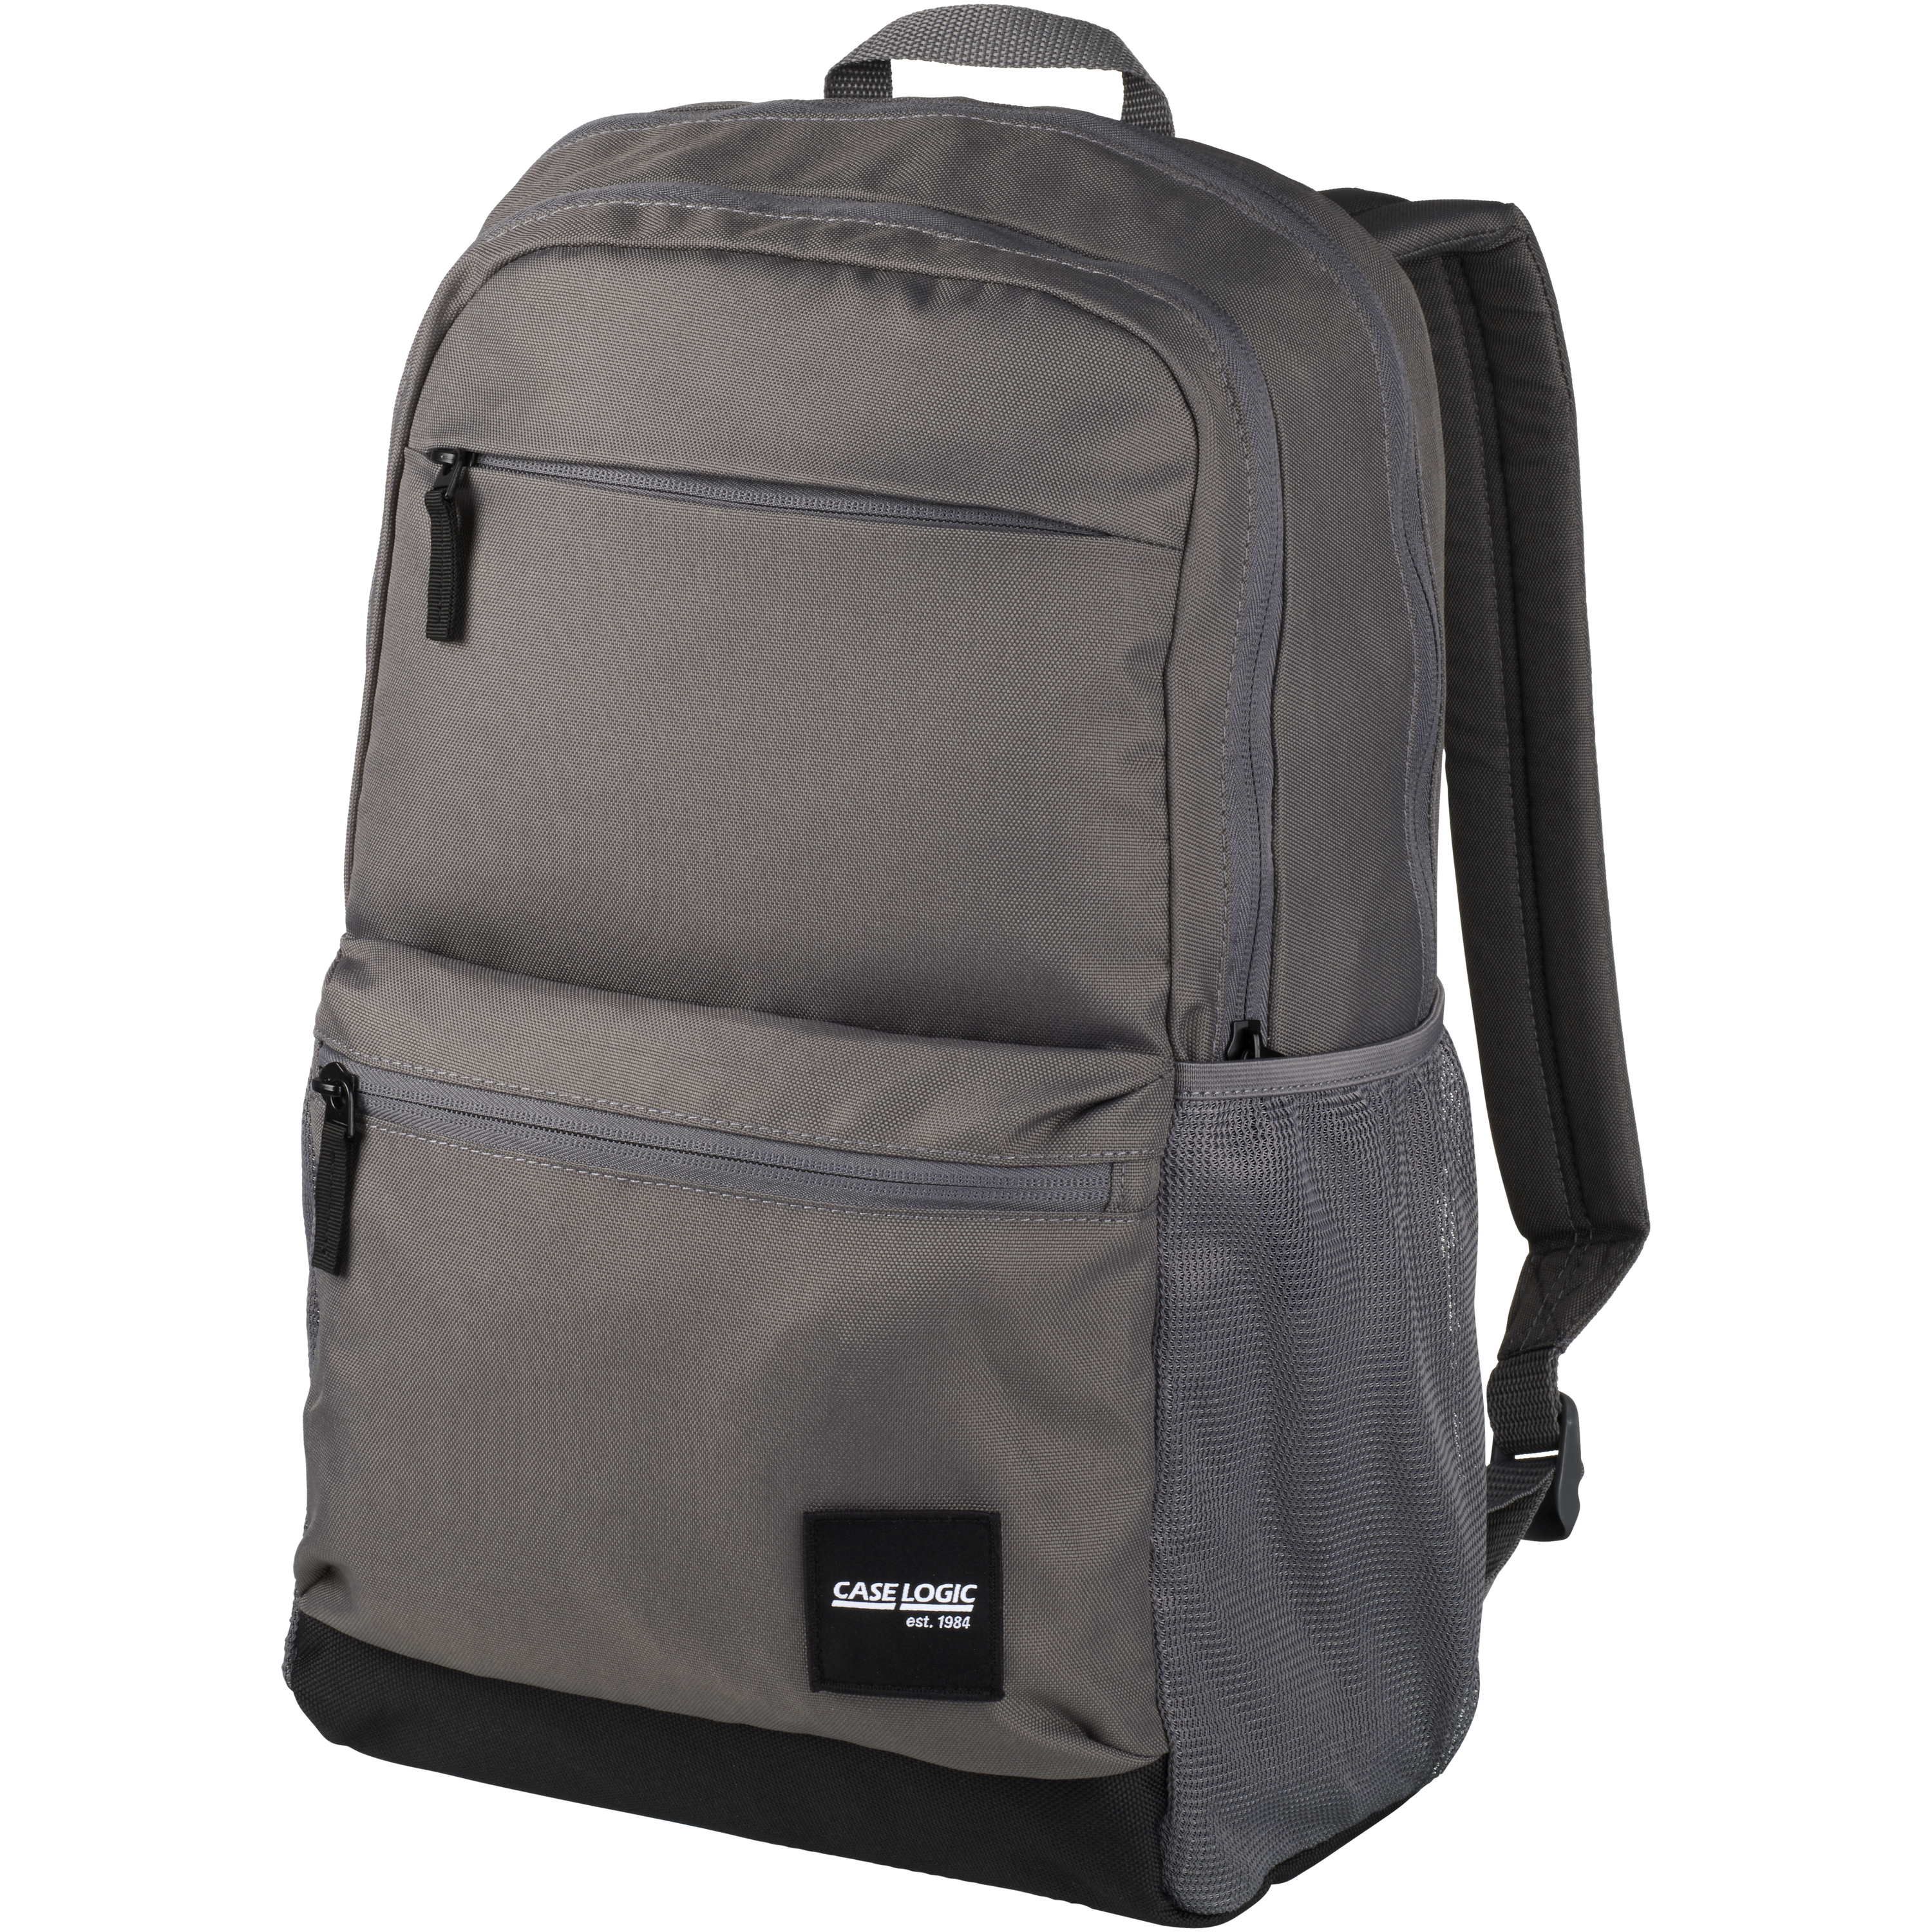 Uplink 15.6" laptop backpack 26L